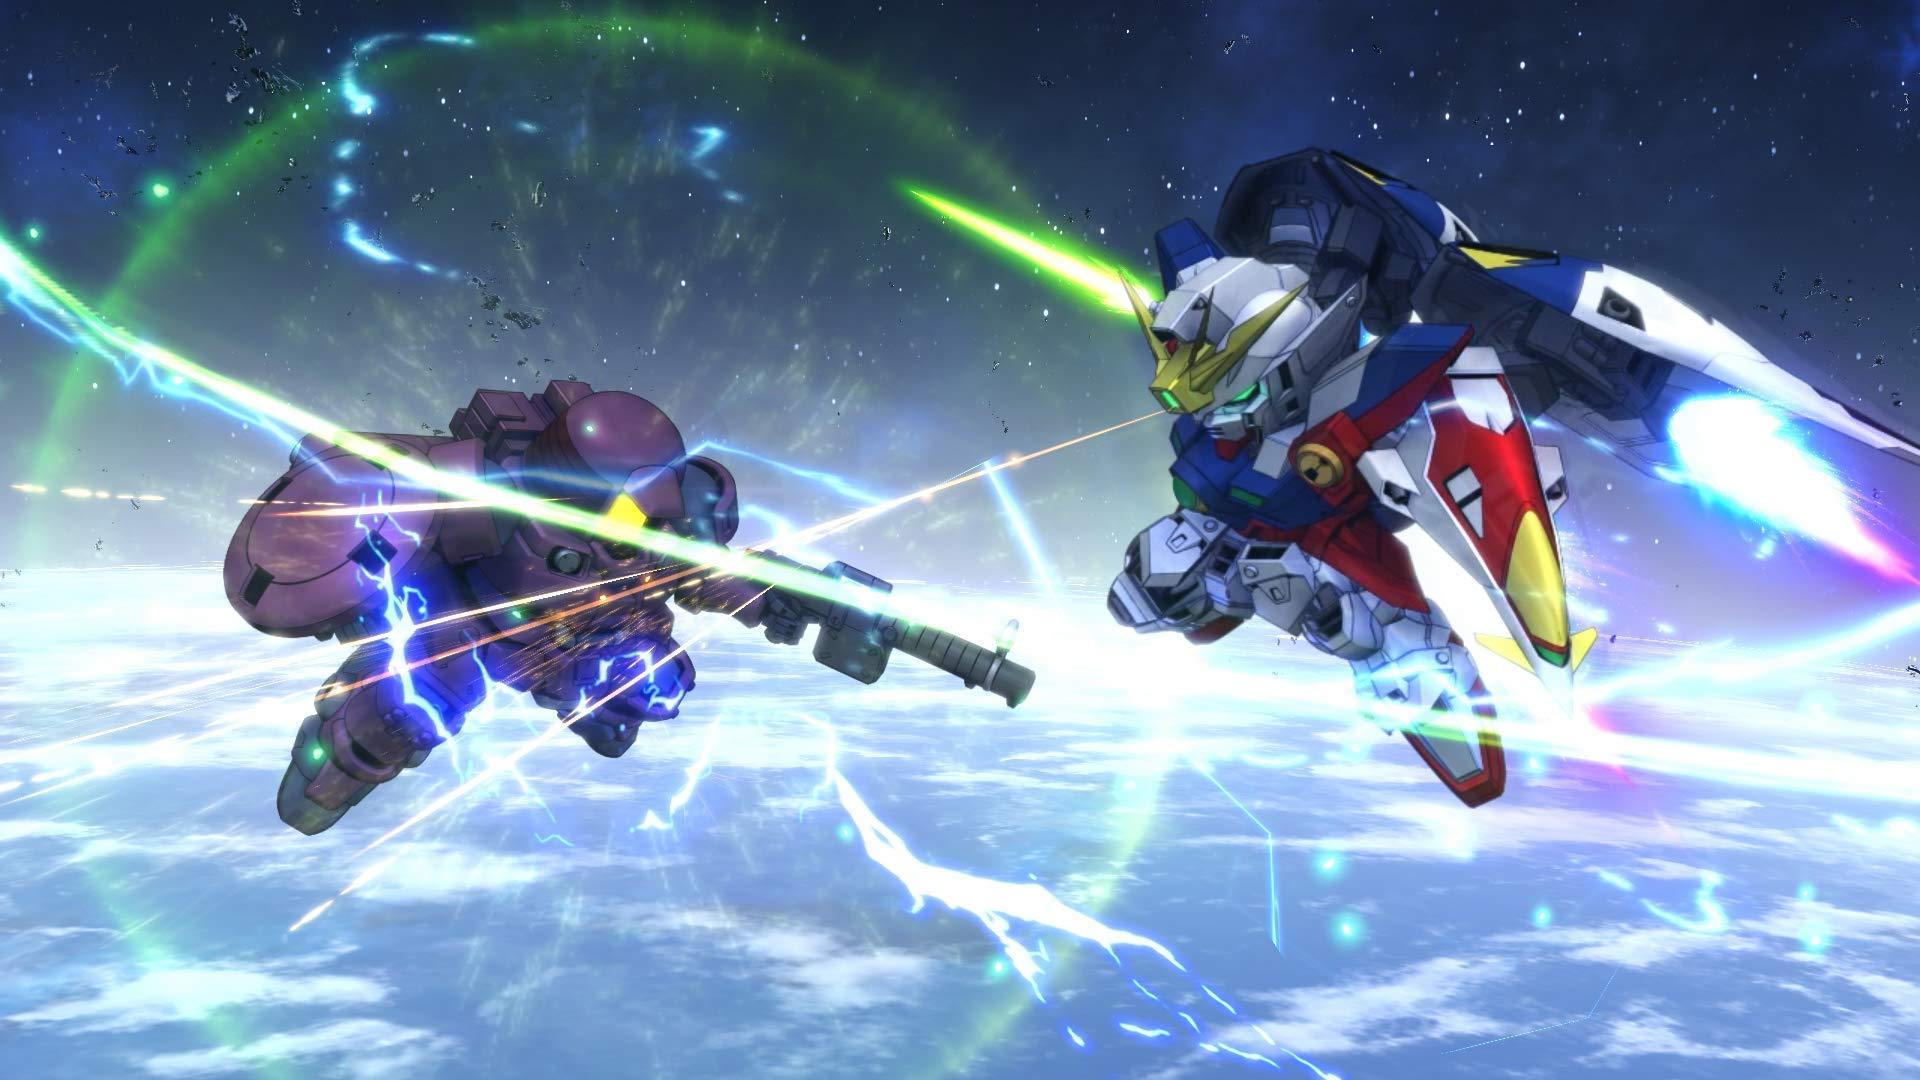 SD Gundam G Generation Cross Rays (English Subtitles) - (PS4) PlayStation 4 Video Games Bandai Namco Games   